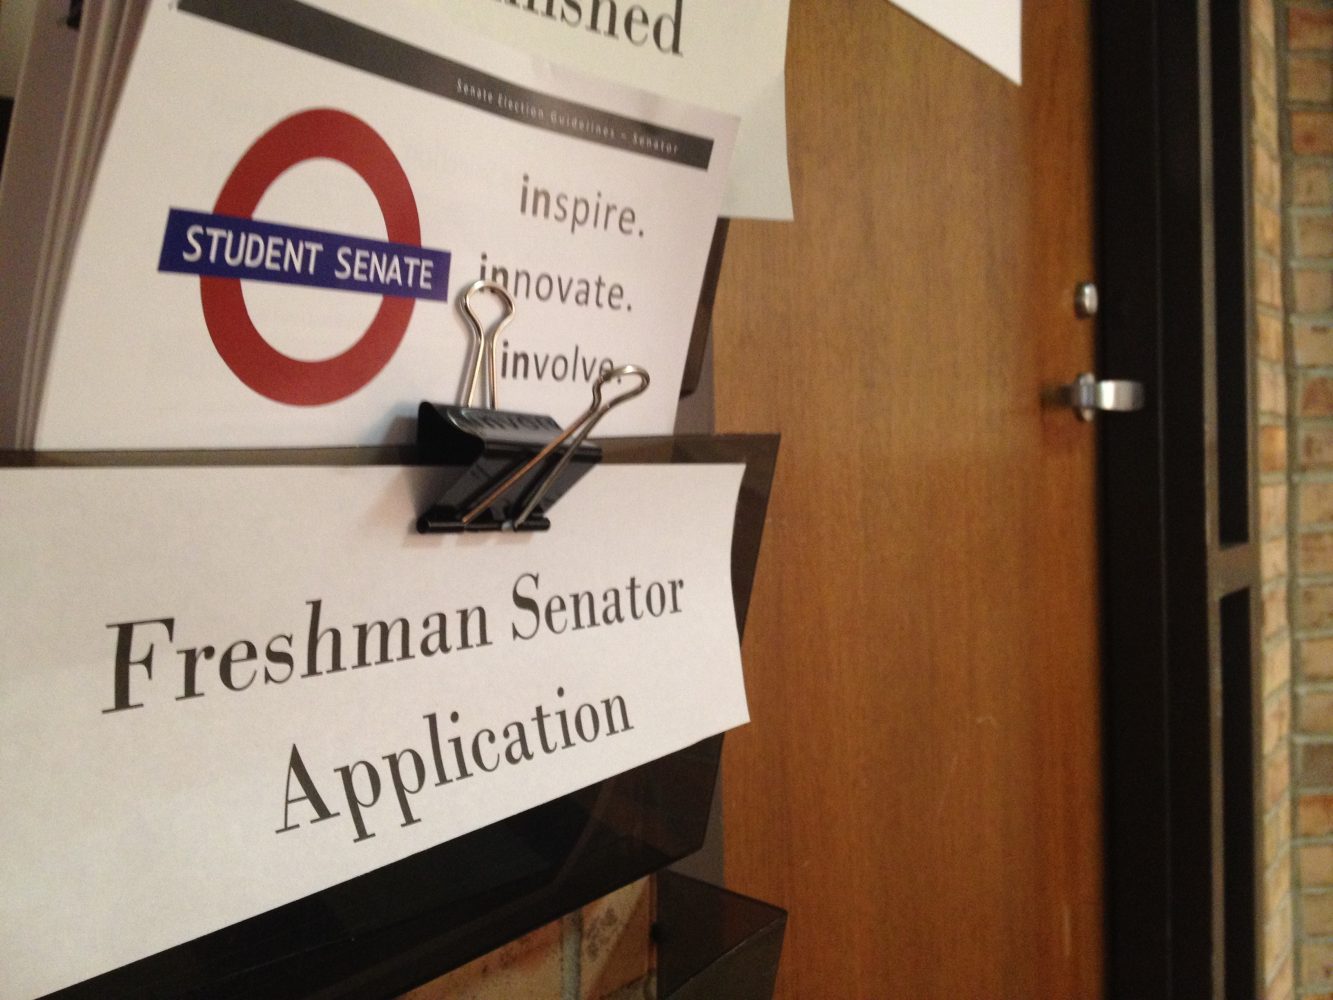 Student+senate+to+choose+three+freshmen+senators